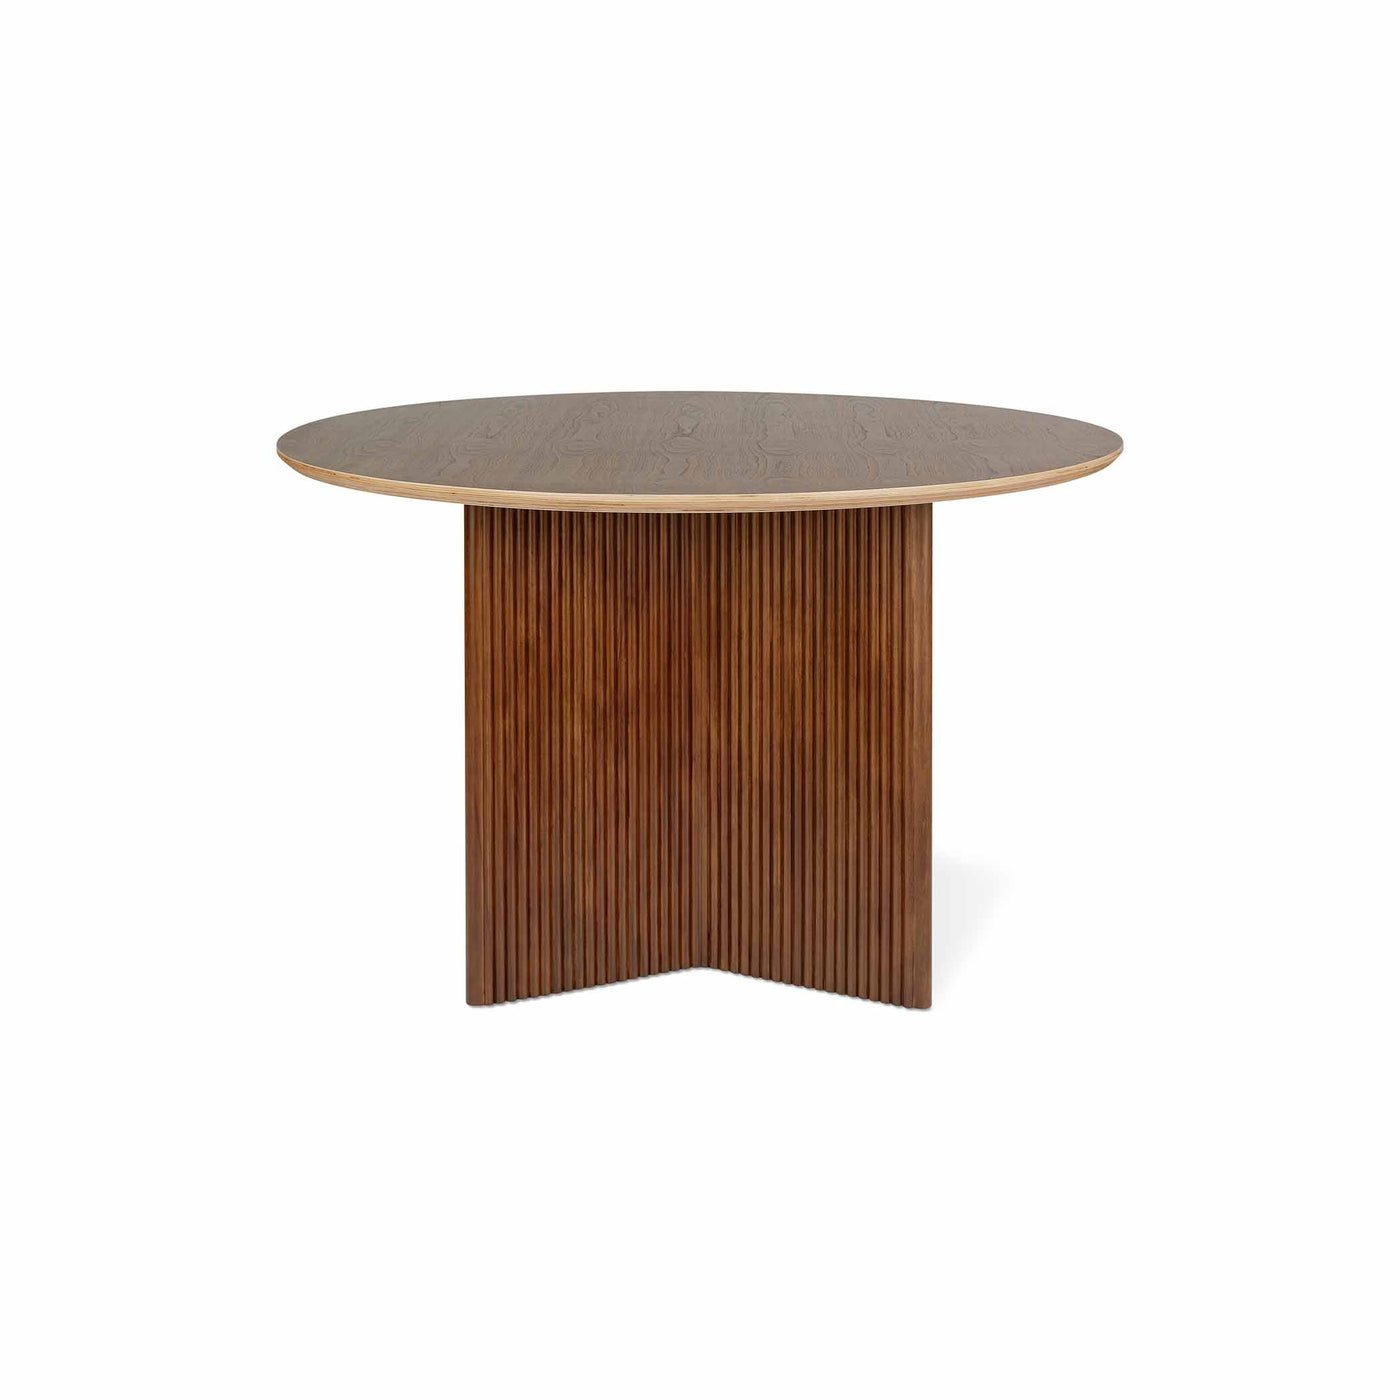 La table Atwell ronde de Gus* Modern : une pièce maîtresse contemporaine inspirée des motifs néoclassiques, offrant une esthétique audacieuse et raffinée pour tout espace de vie.